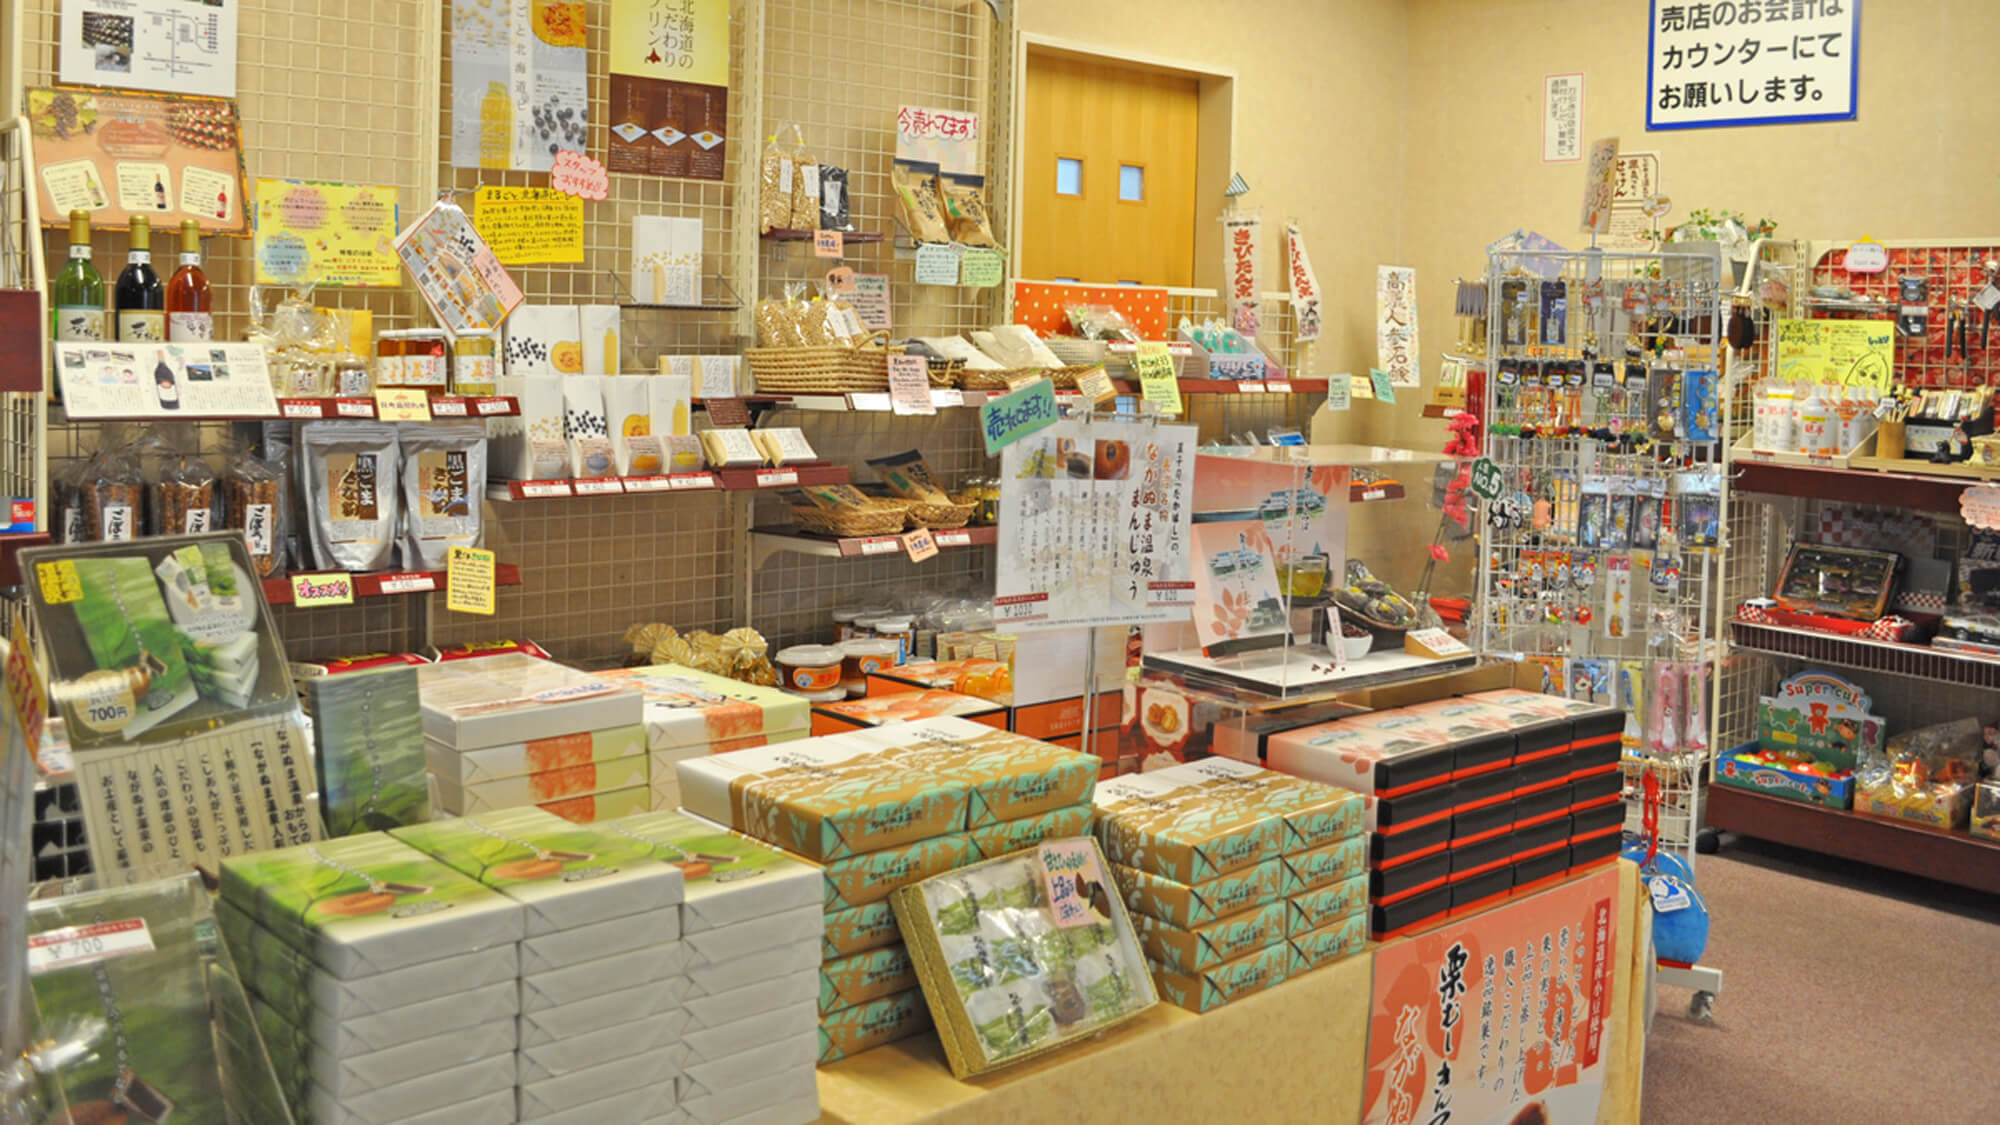 【館内】長沼町の特産品やお土産用のお菓子などが揃った売店